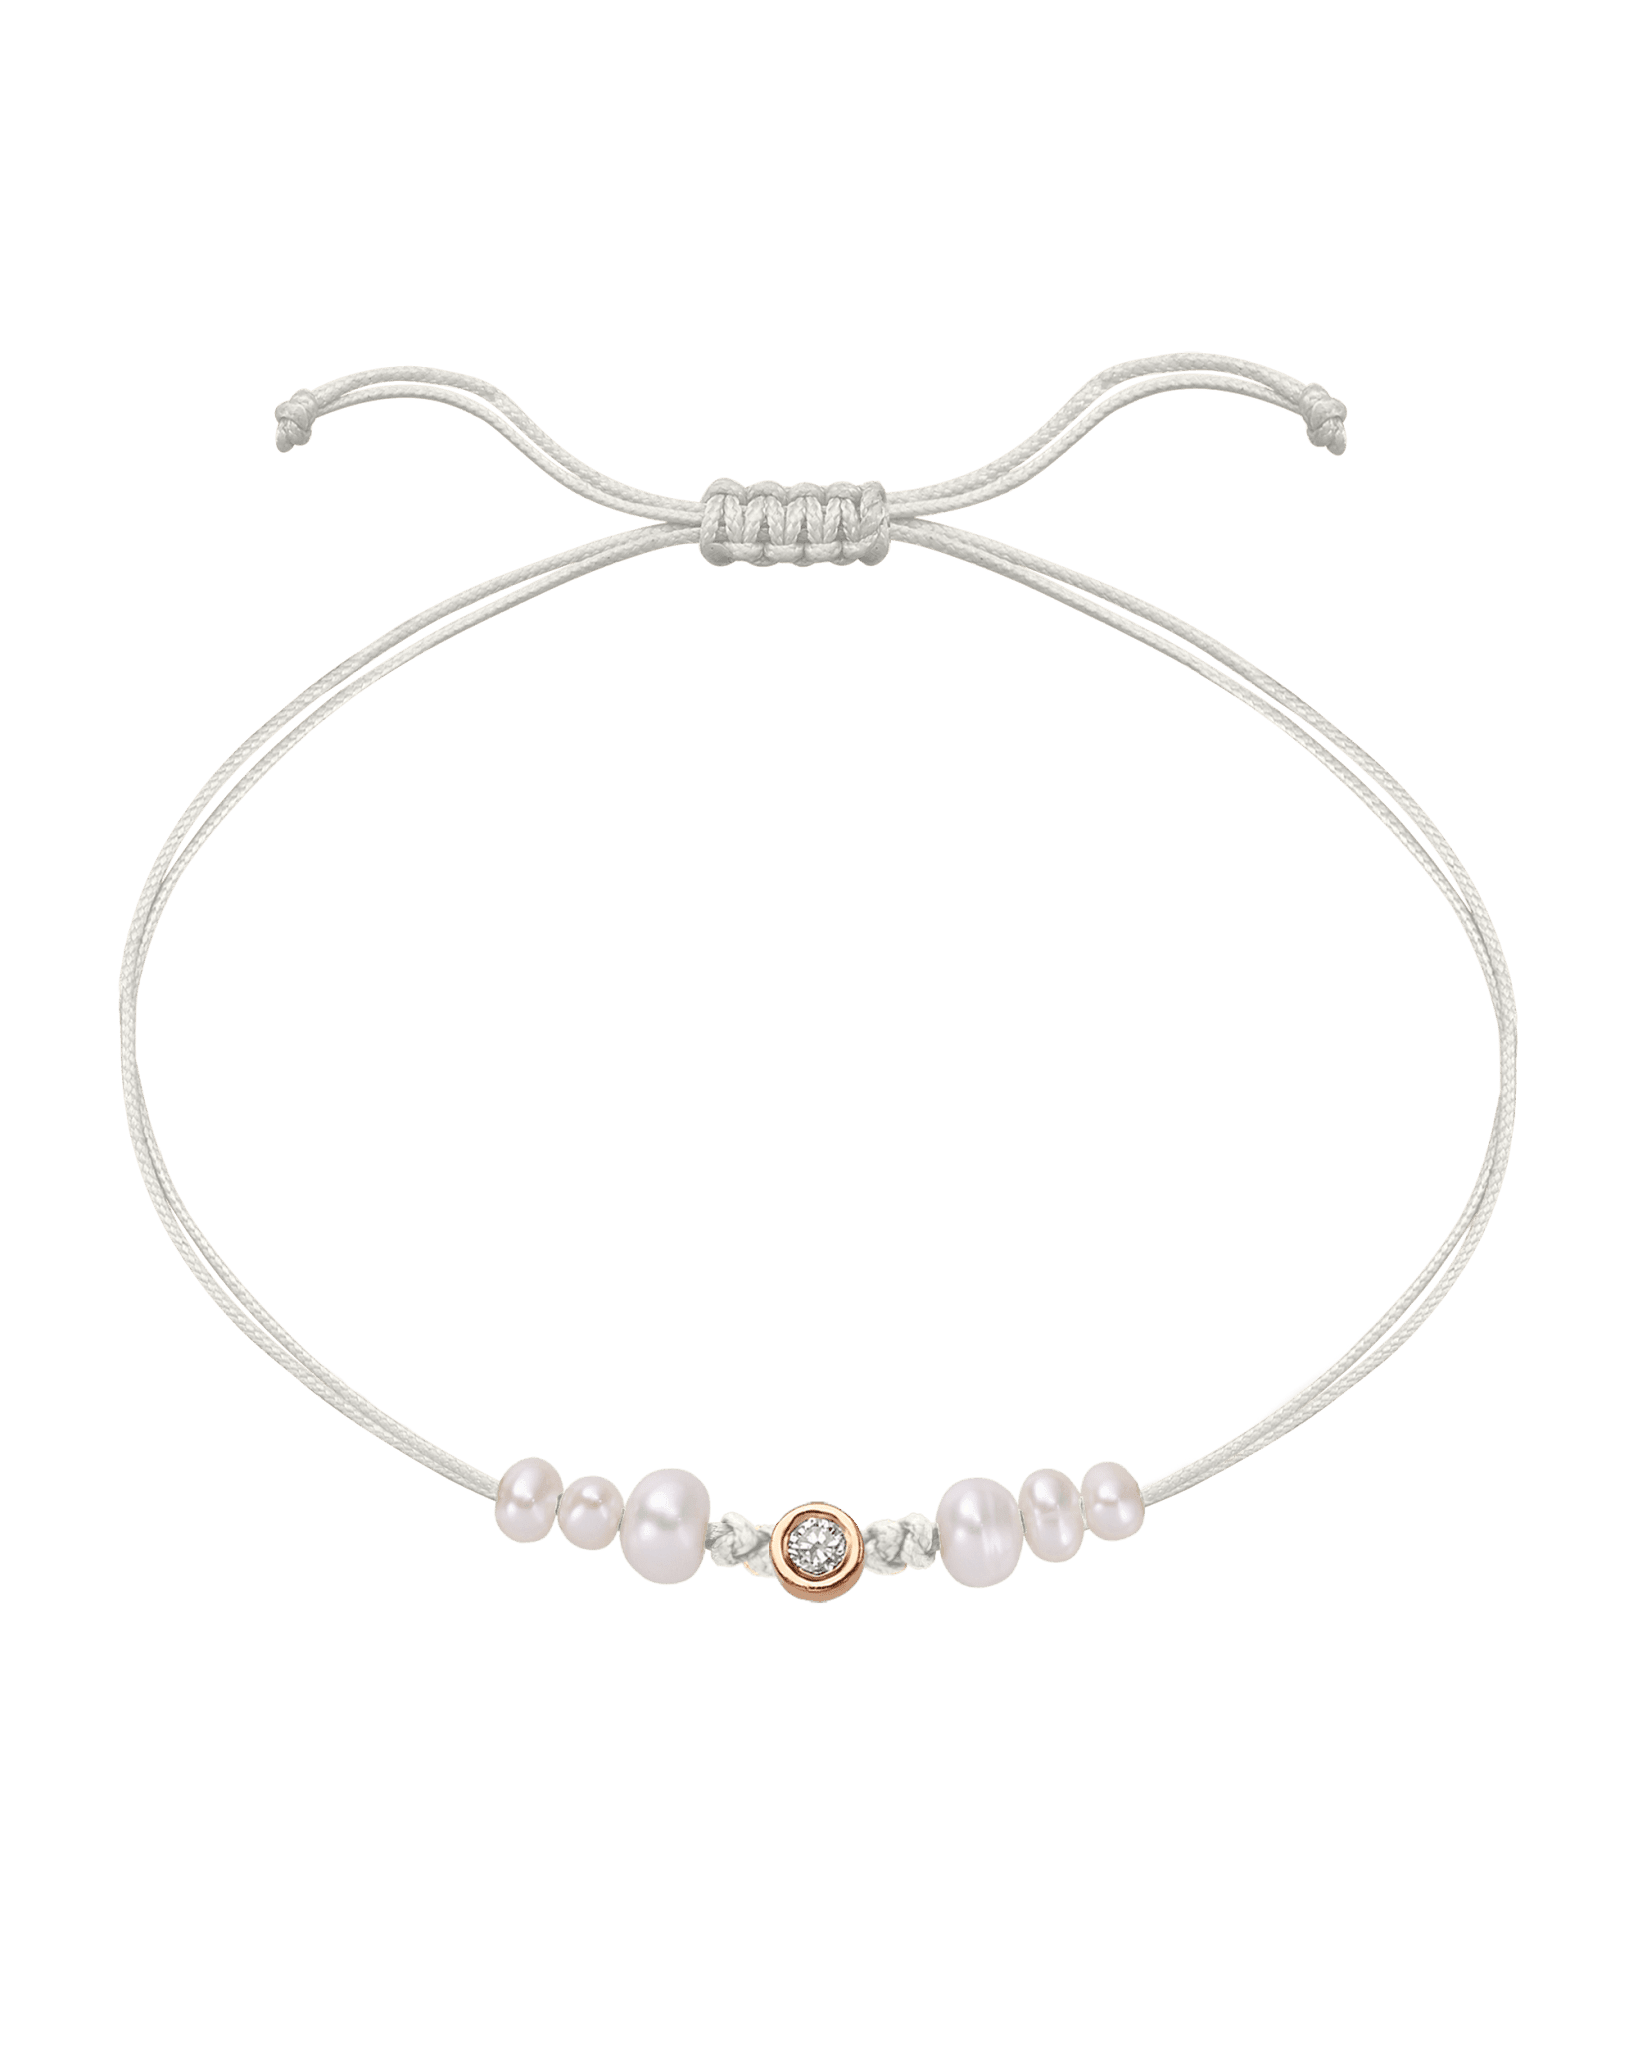 Six Natural Pearl String of Love Bracelet - 14K Rose Gold Bracelet 14K Solid Gold Pearl Medium: 0.04ct 